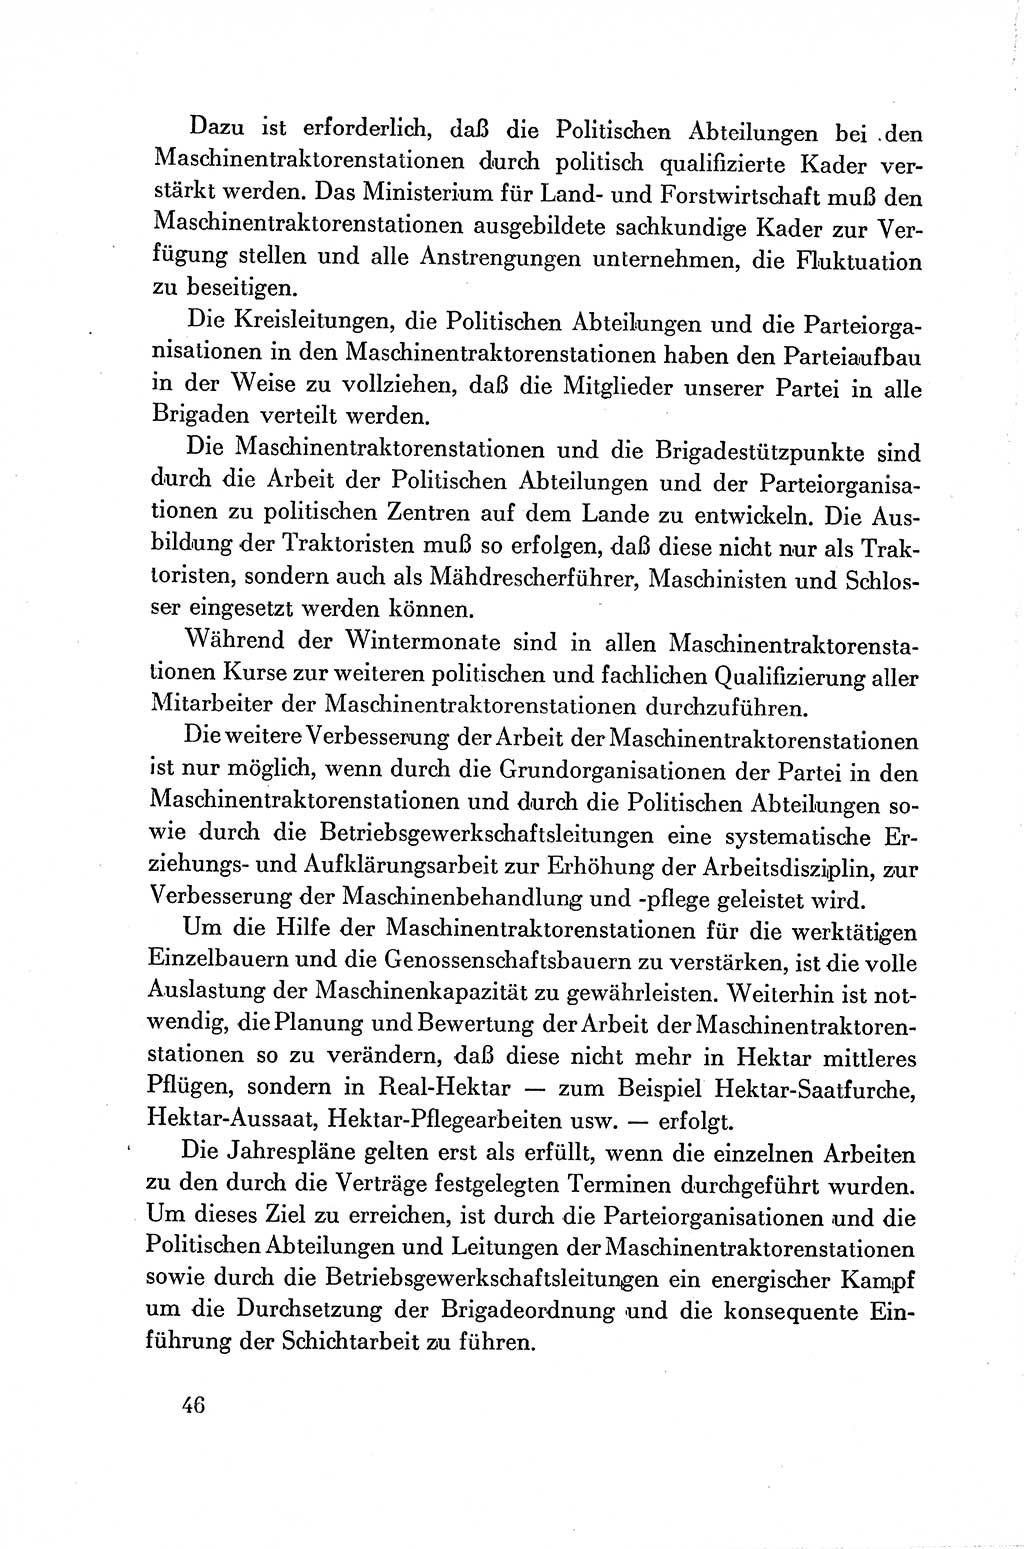 Dokumente der Sozialistischen Einheitspartei Deutschlands (SED) [Deutsche Demokratische Republik (DDR)] 1954-1955, Seite 46 (Dok. SED DDR 1954-1955, S. 46)